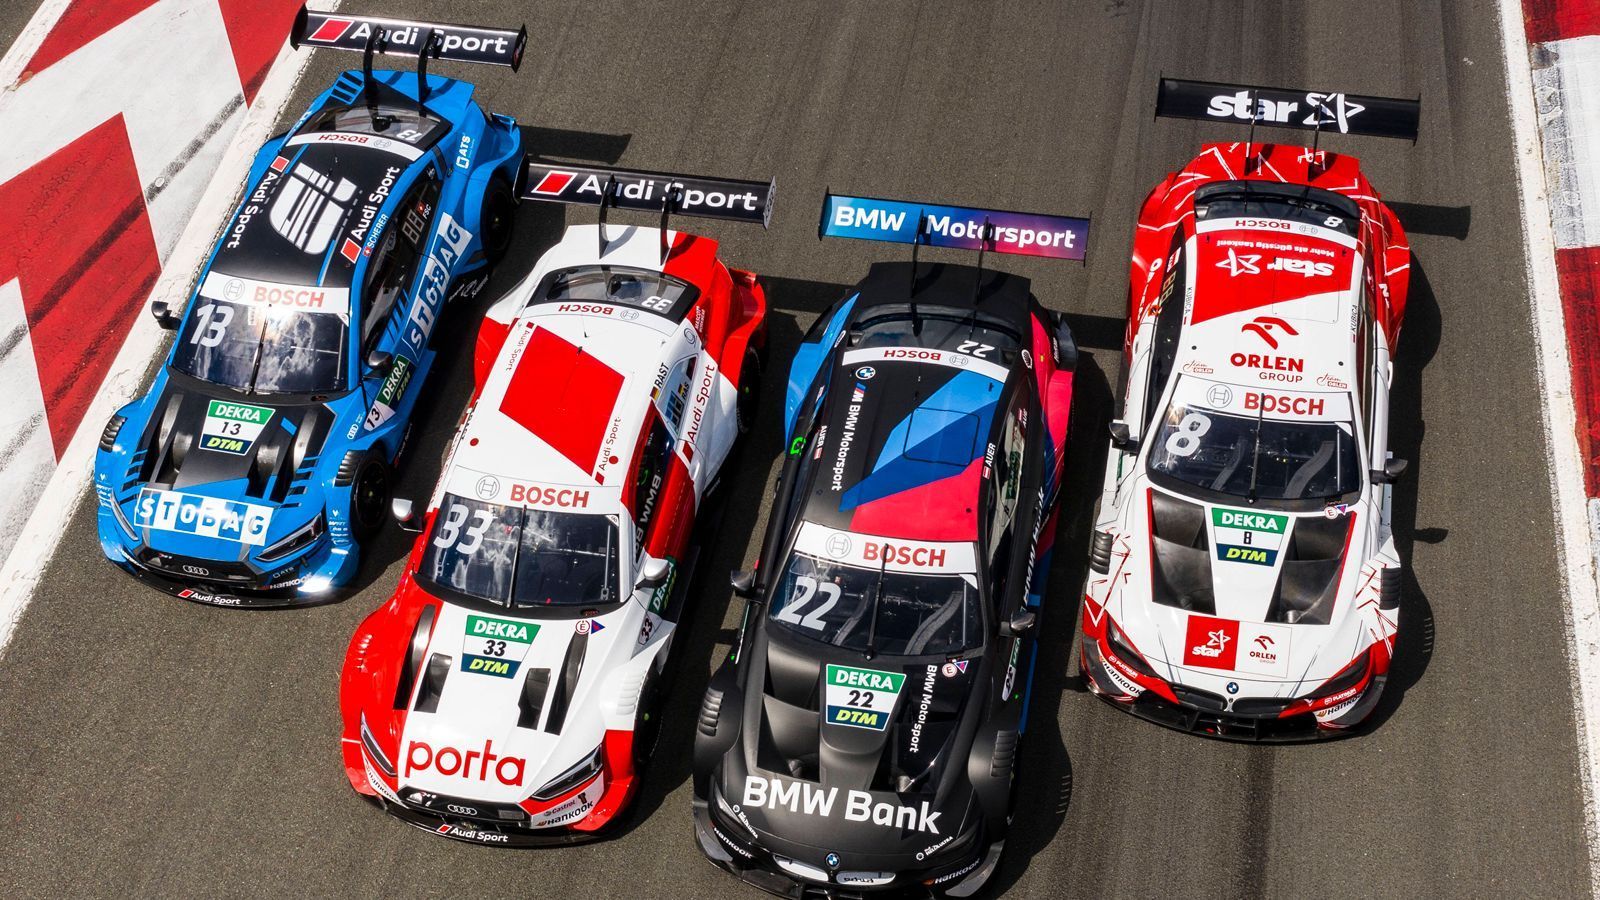 
                <strong>Abt, Rosberg, WRT und Co.: Die Teams in der DTM</strong><br>
                Audi und BMW sind die beiden Hersteller in der DTM - wesentlicher Bestandteil der Serie sind aber auch die Einsatzteams. Schließlich gibt es für sie auch eine eigene Wertung. Fünf Werksteams sowie zwei Privatteams gehen an den Start. ran.de stellt sie vor.
              